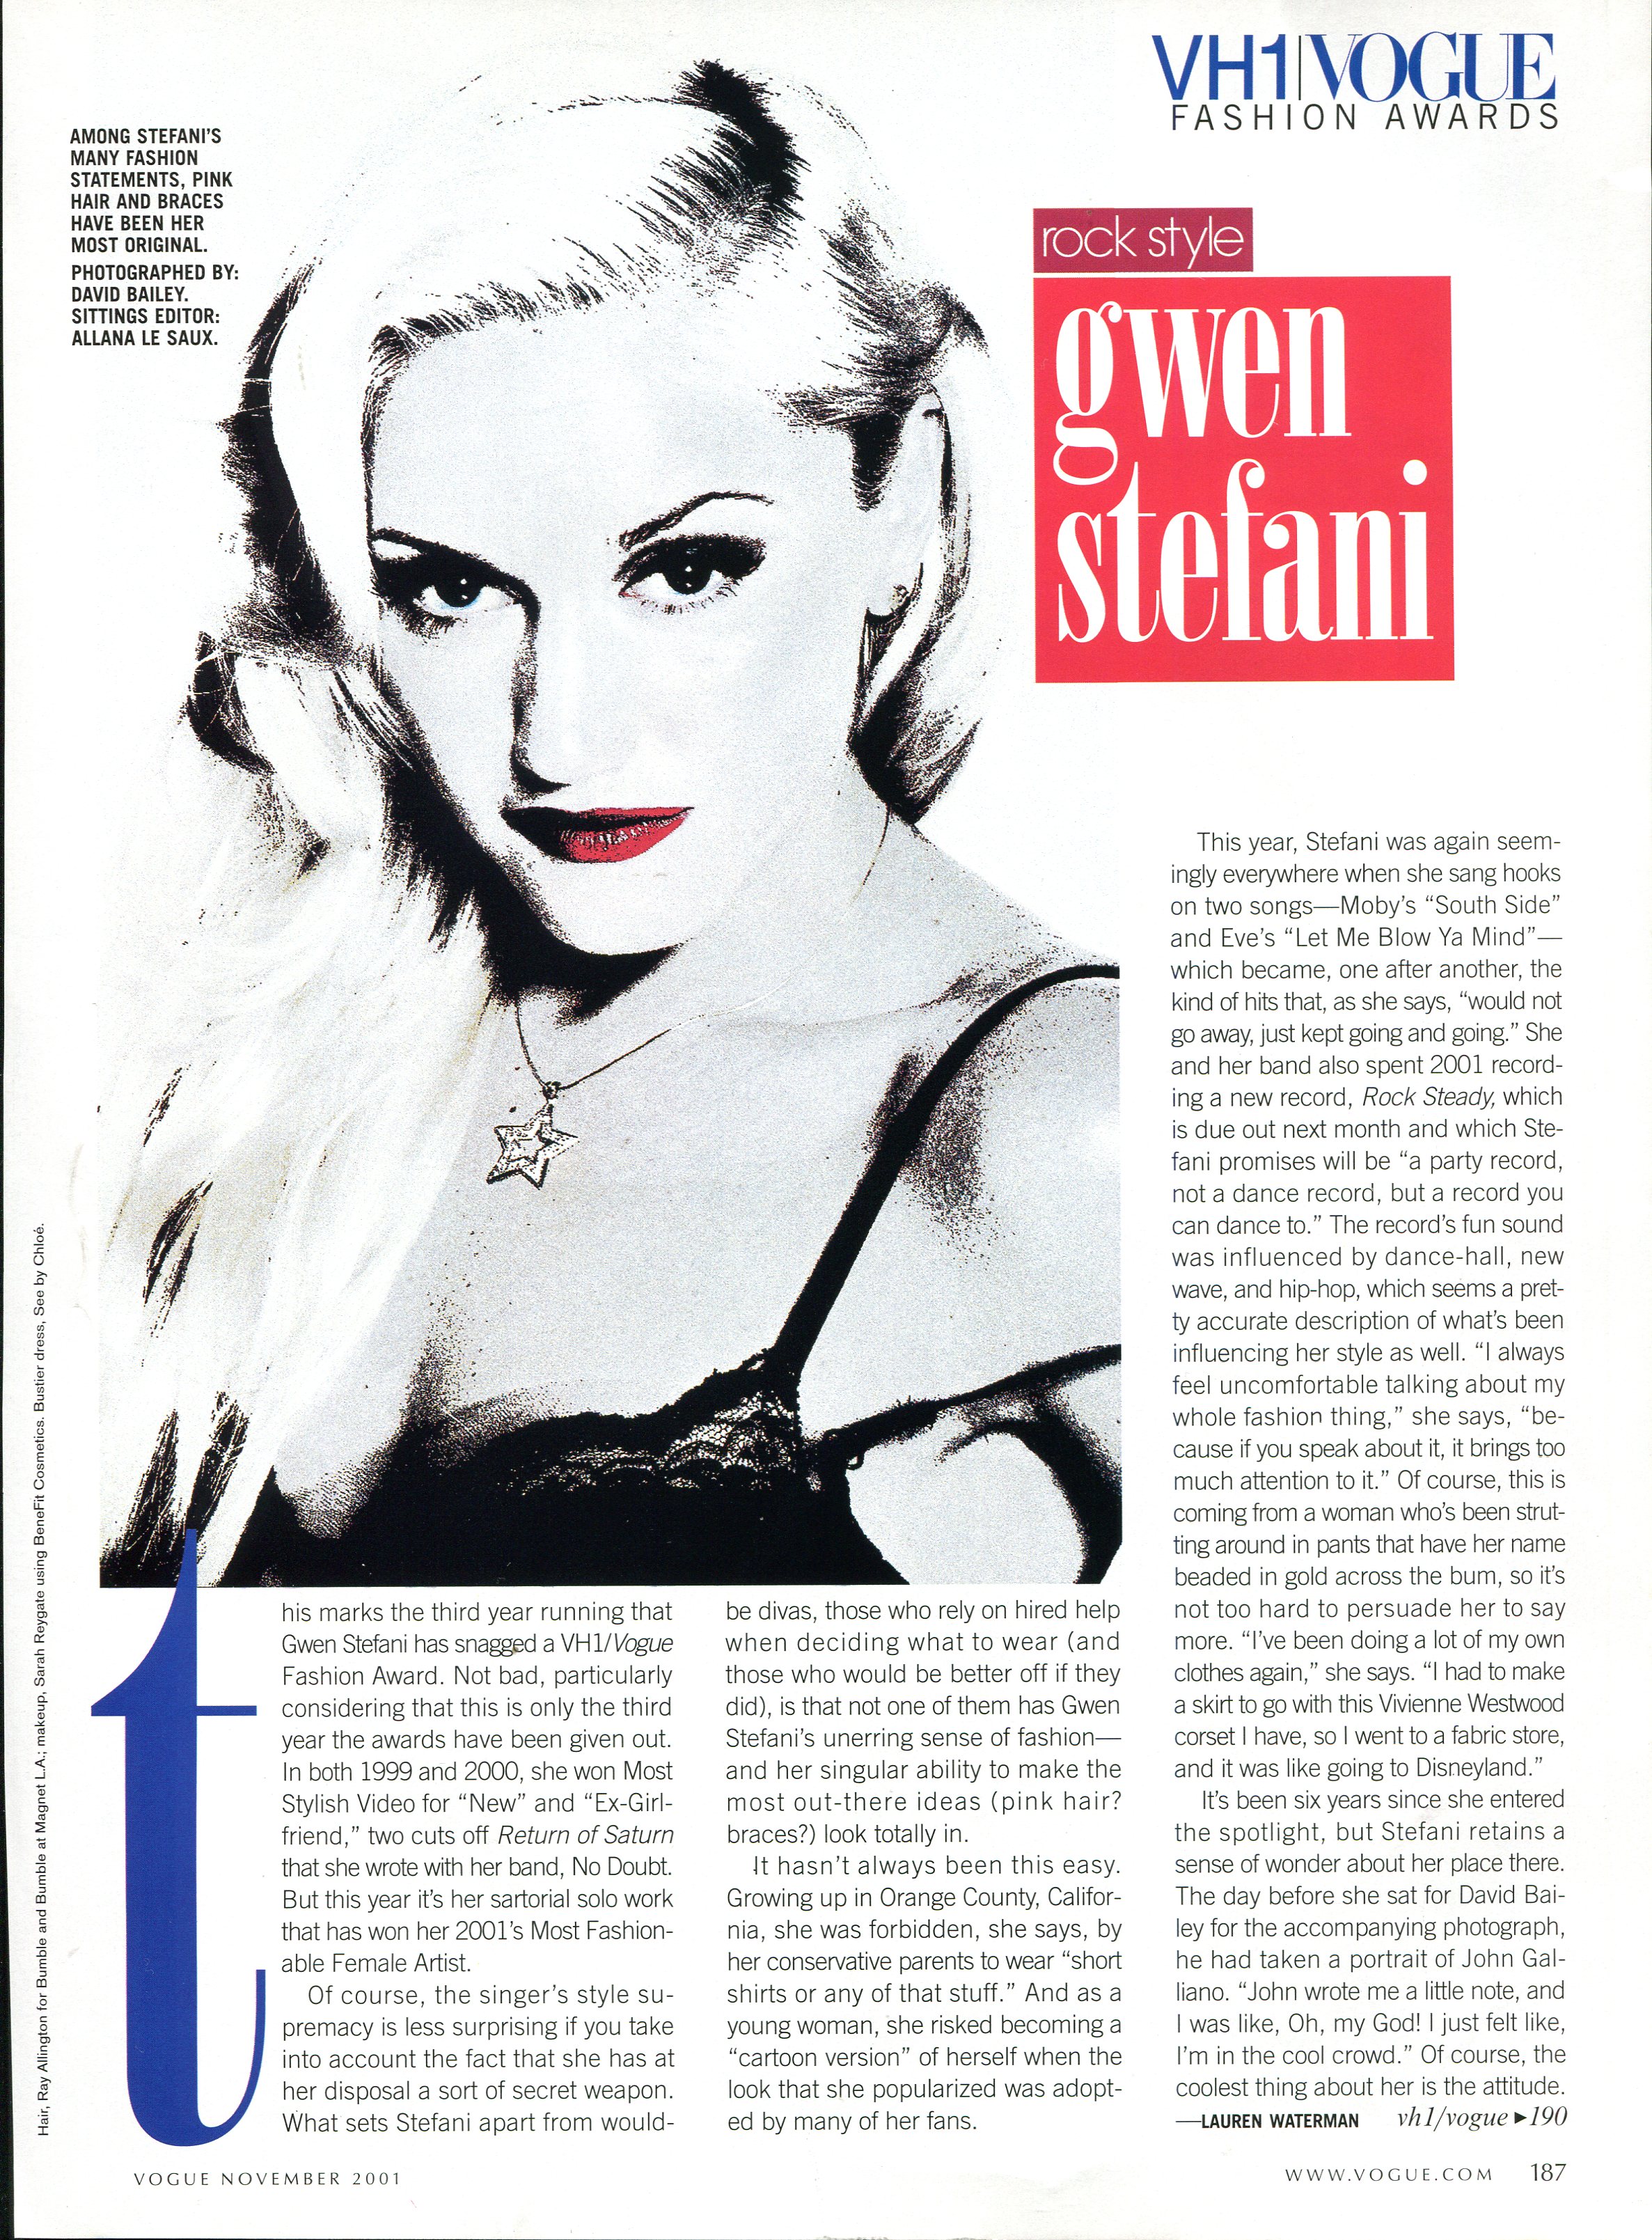 Vogue - November 2001 (Copy)